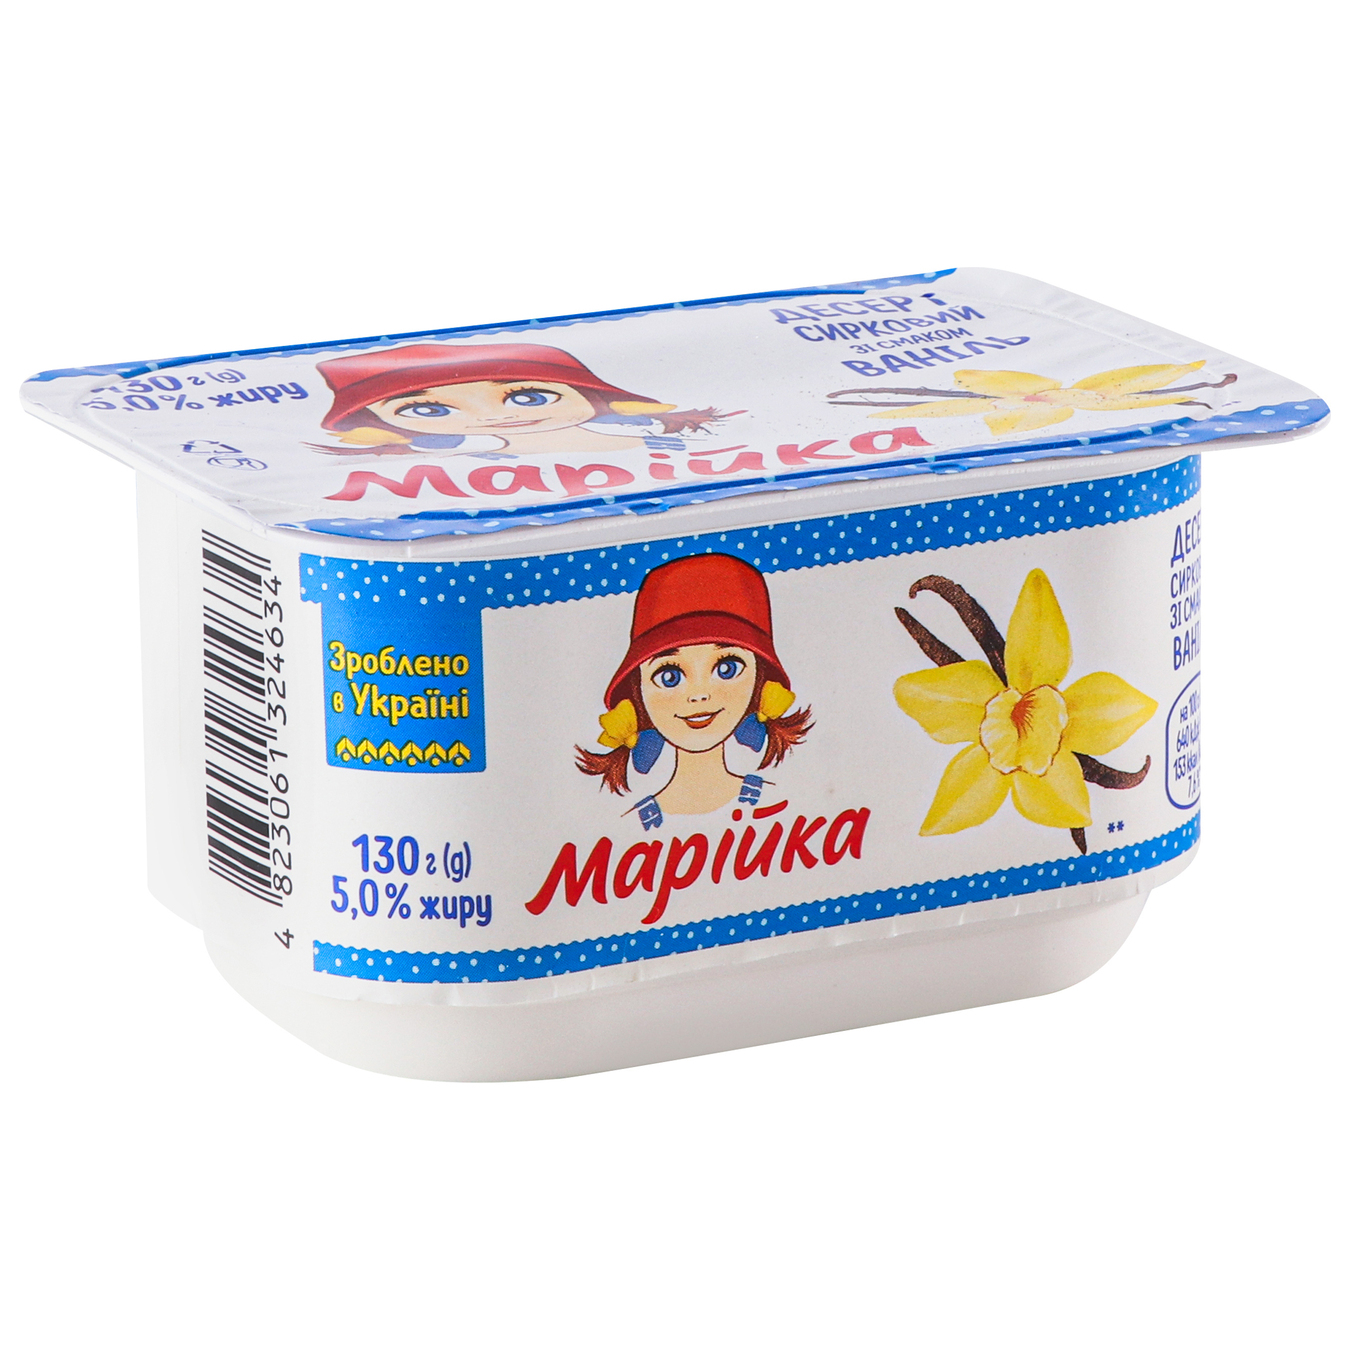 Mariyka cottage cheese dessert 5% 130g 4